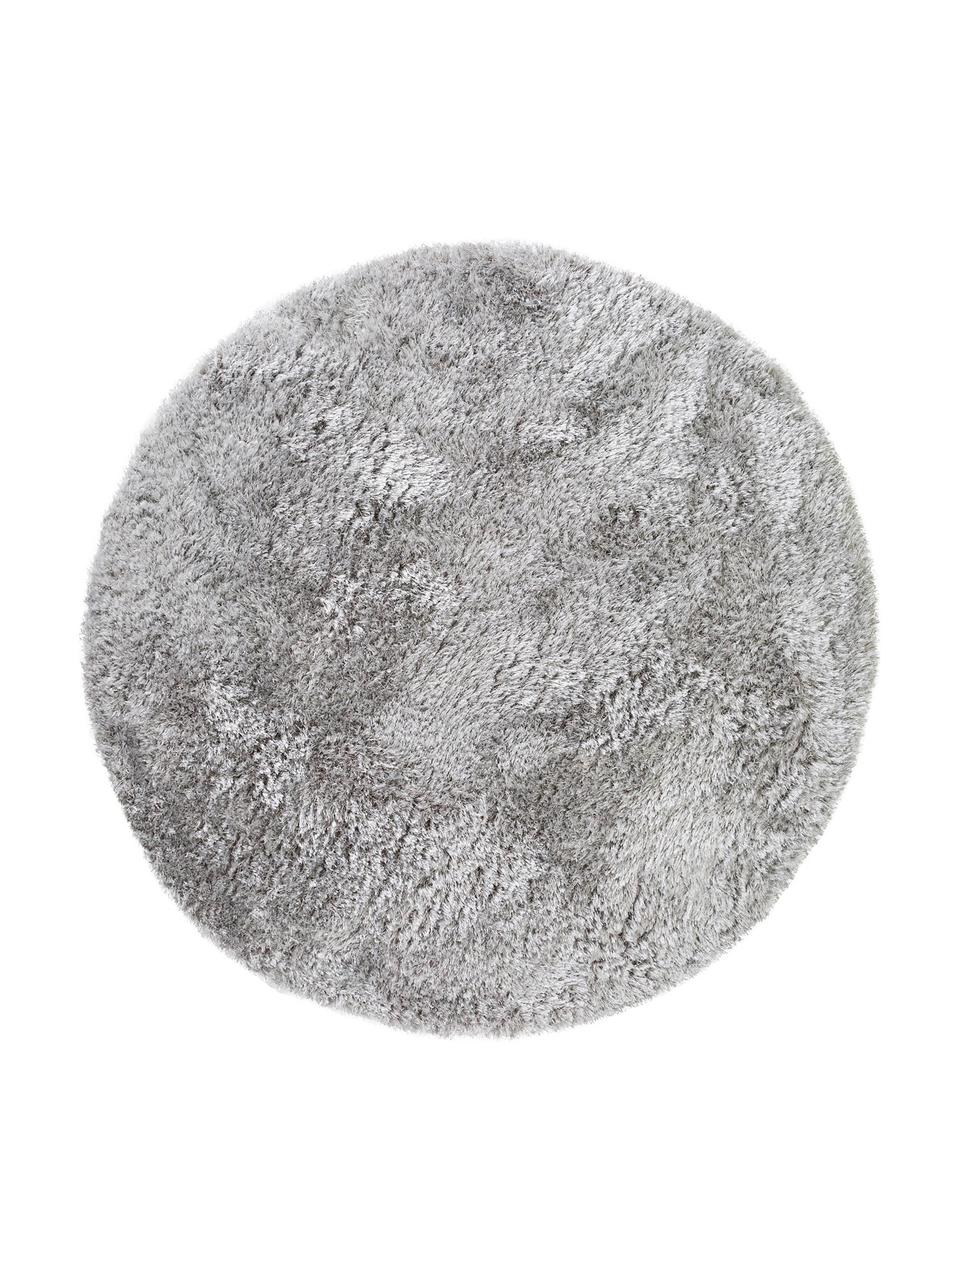 Glänzender Hochflor-Teppich Lea in Hellgrau, rund, Flor: 50% Polyester, 50% Polypr, Grau, Ø 200 cm (Größe L)